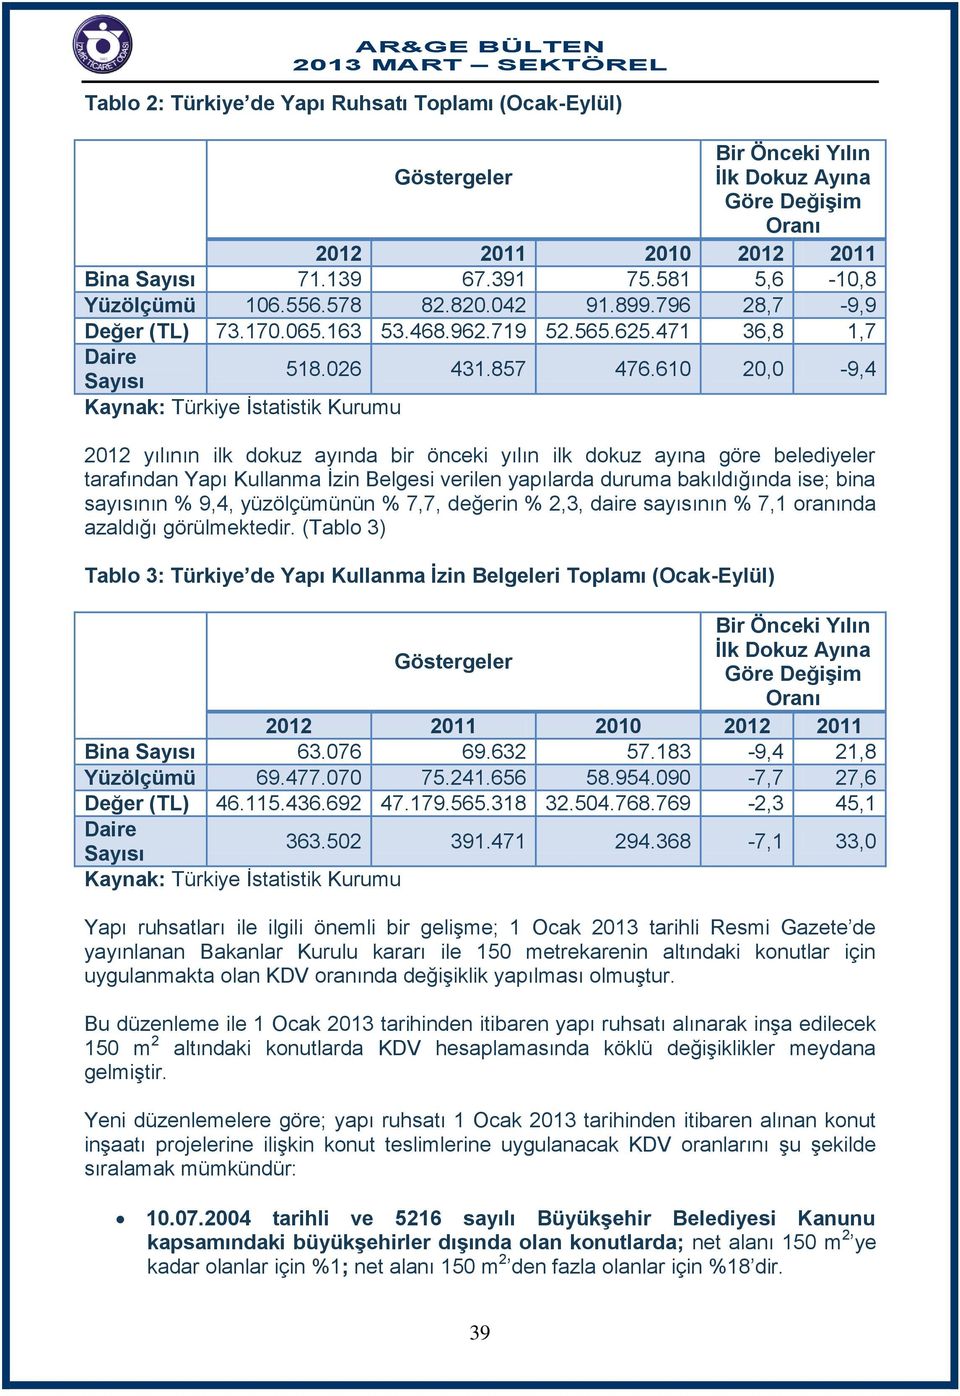 610 20,0-9,4 Kaynak: Türkiye İstatistik Kurumu 2012 yılının ilk dokuz ayında bir önceki yılın ilk dokuz ayına göre belediyeler tarafından Yapı Kullanma İzin Belgesi verilen yapılarda duruma